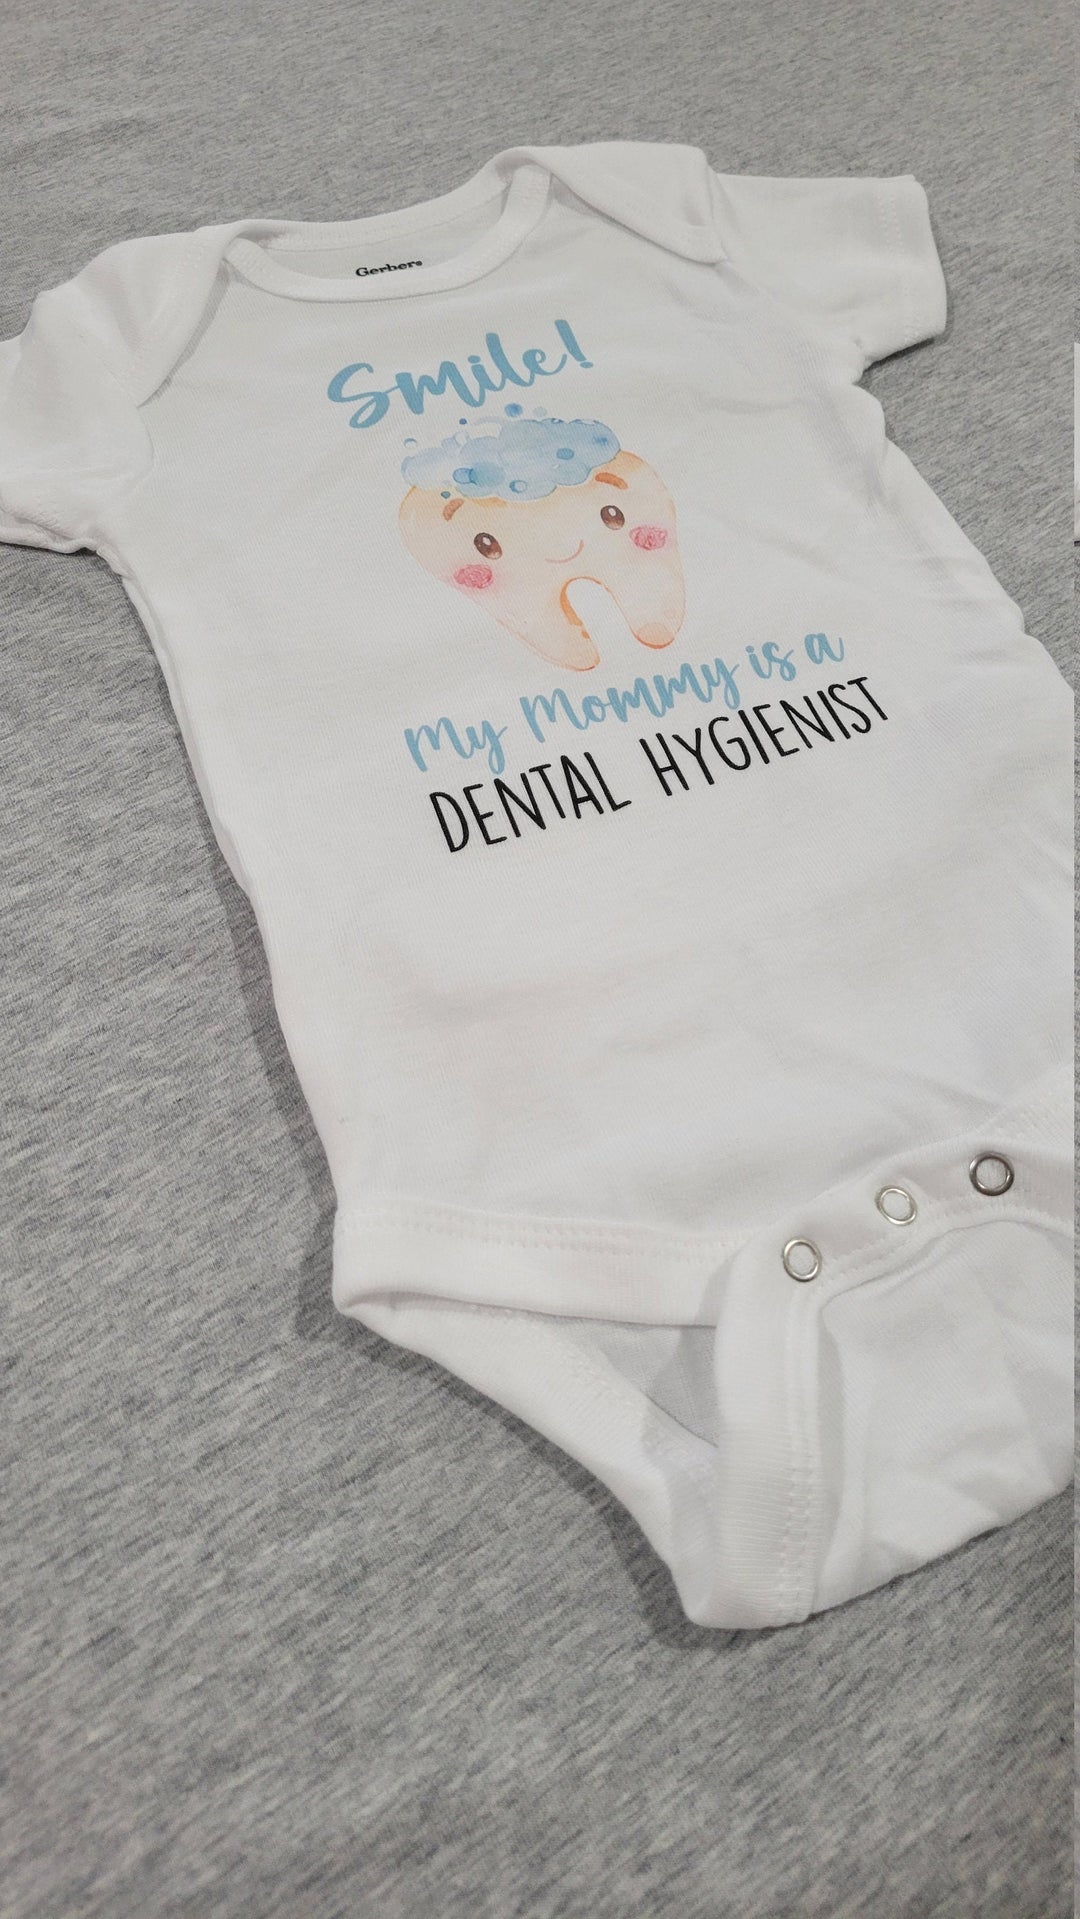 Dental - Baby Boy Girl Clothes Infant Bodysuit Funny Cute Newborn 1